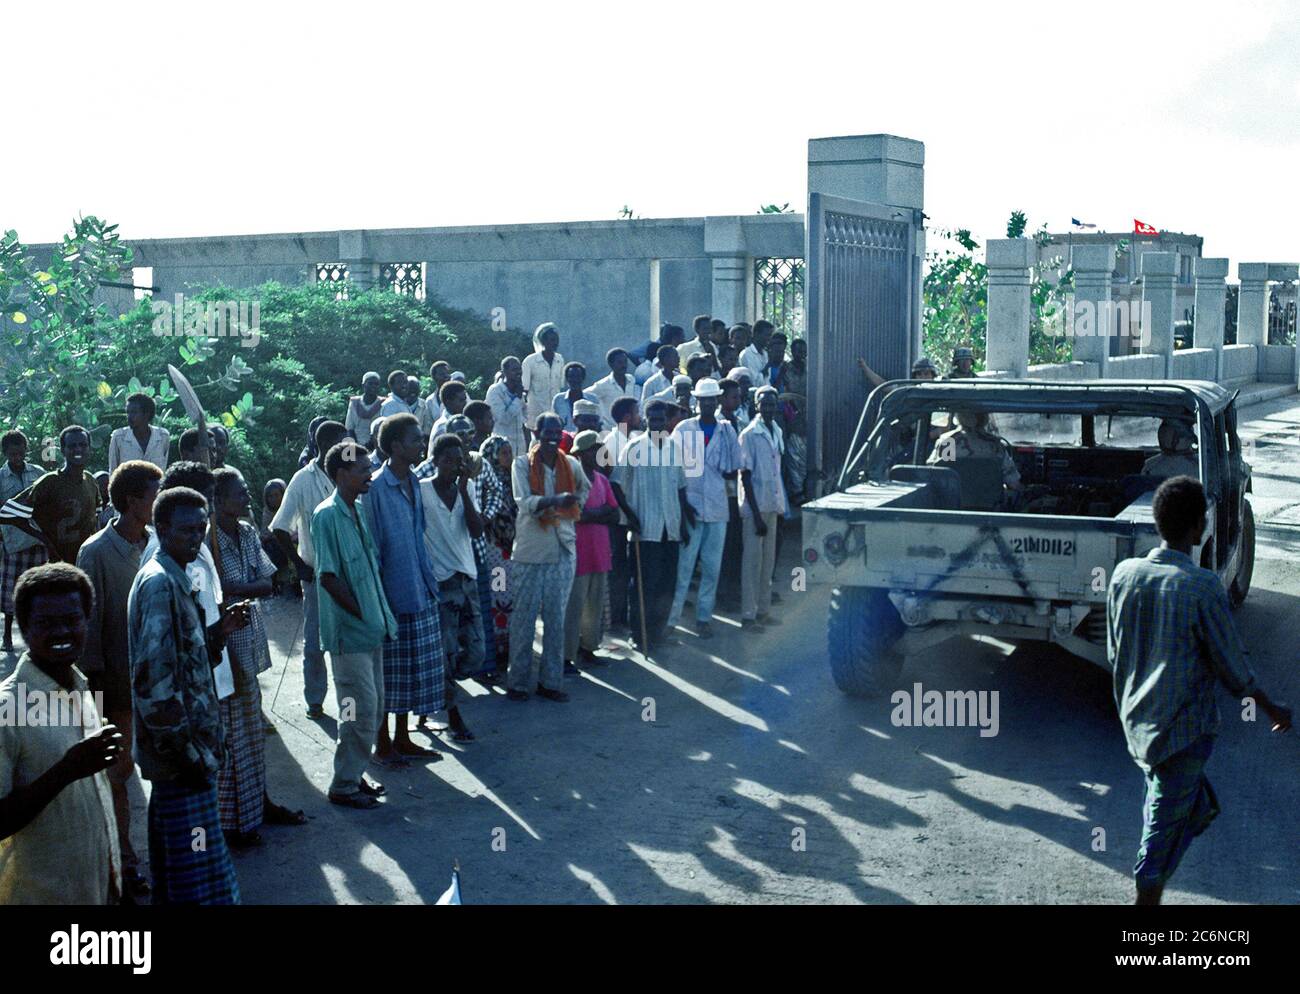 1992 - Somaliens watch comme un véhicule de série M-998 entre dans le groupe de travail conjoint de l'administration centrale de la Somalie. Le siège a été établi à l'ancienne ambassade des États-Unis au cours de la multinationale composée de secours l'Opération Restore Hope. Banque D'Images